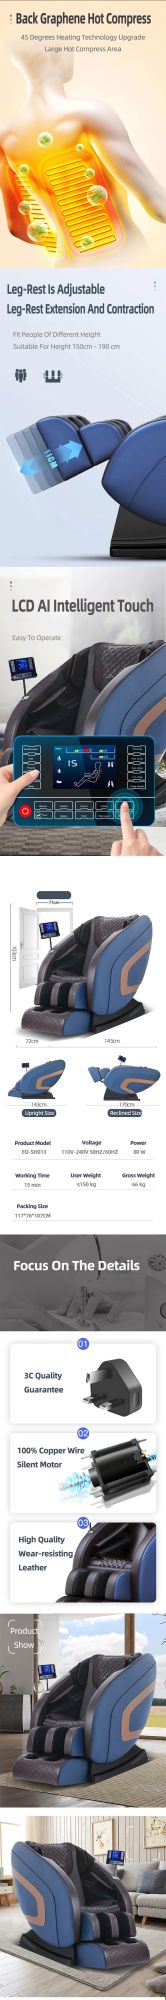 Amazon Hot Sale Vending 8d Massage Chair Zero Gravity for 2021